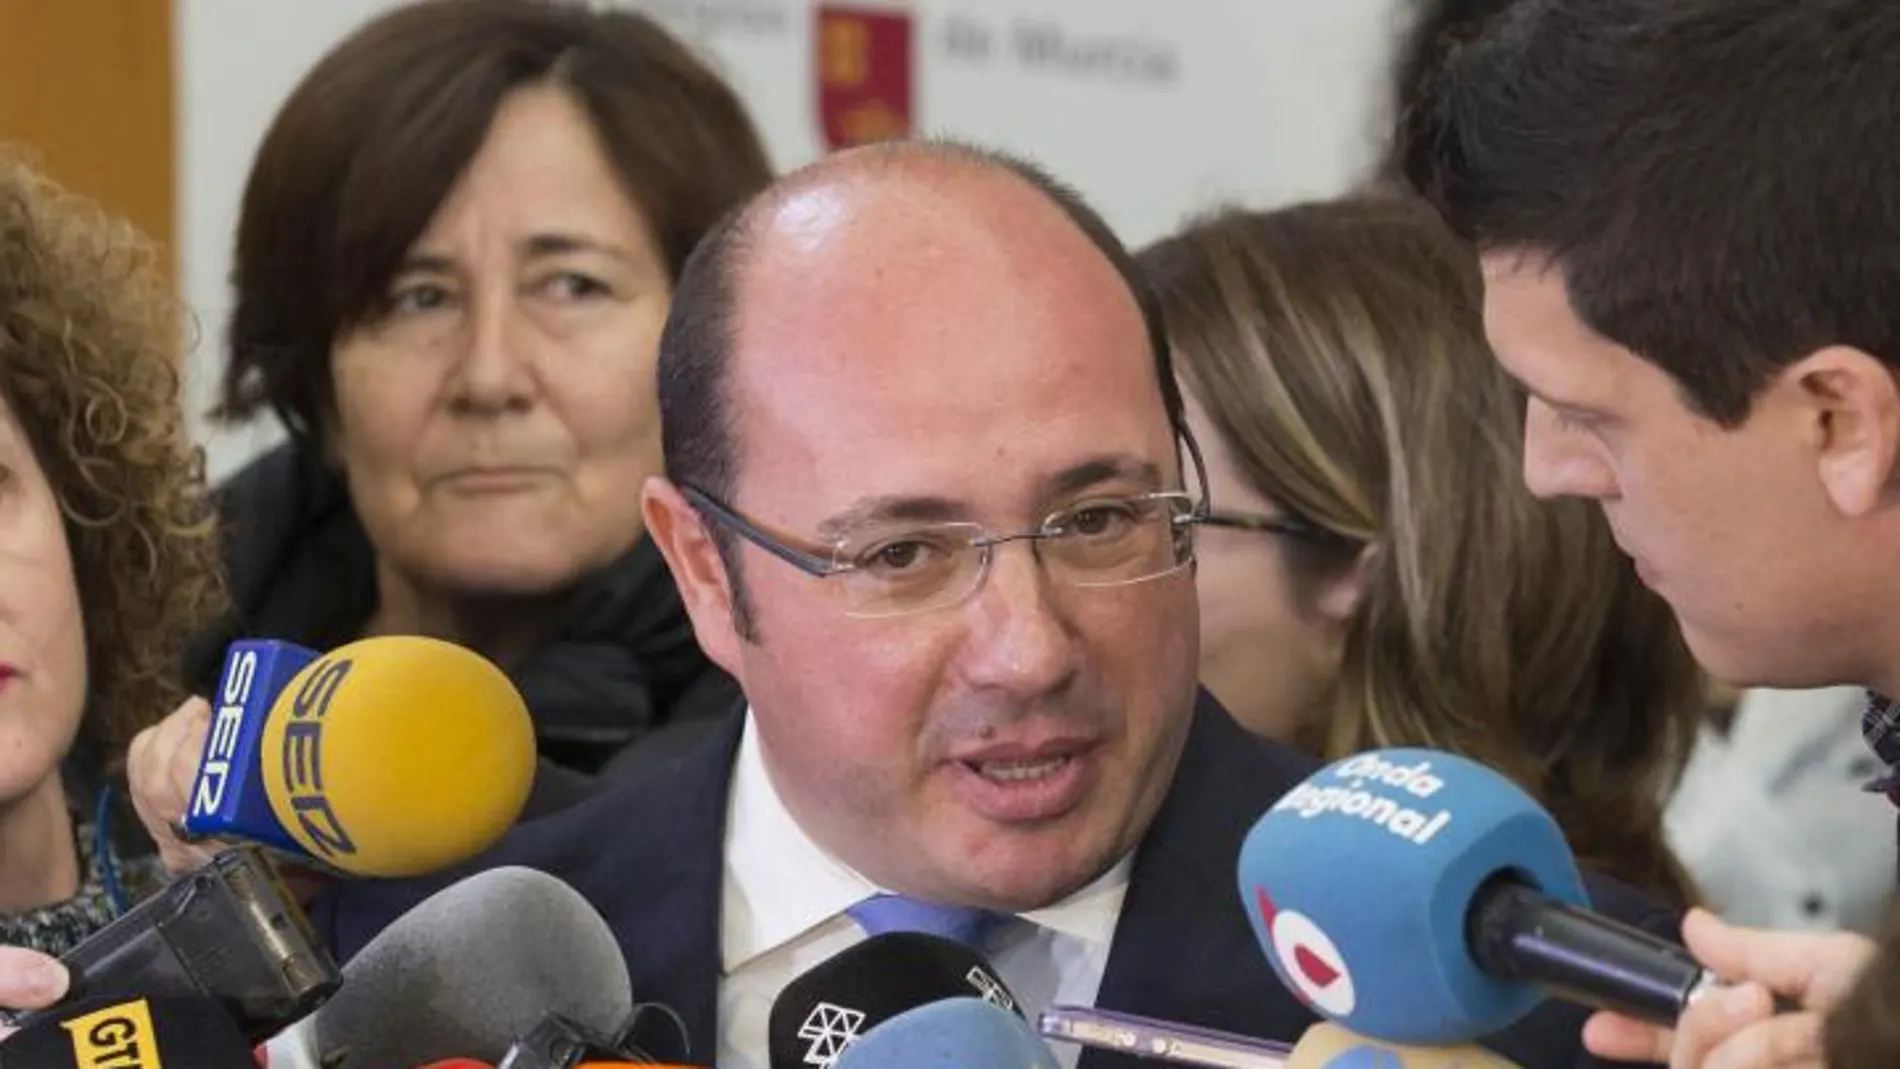 El presidente de Murcia, Pedro Antonio Sánchez, atiende a los medios de comunicación